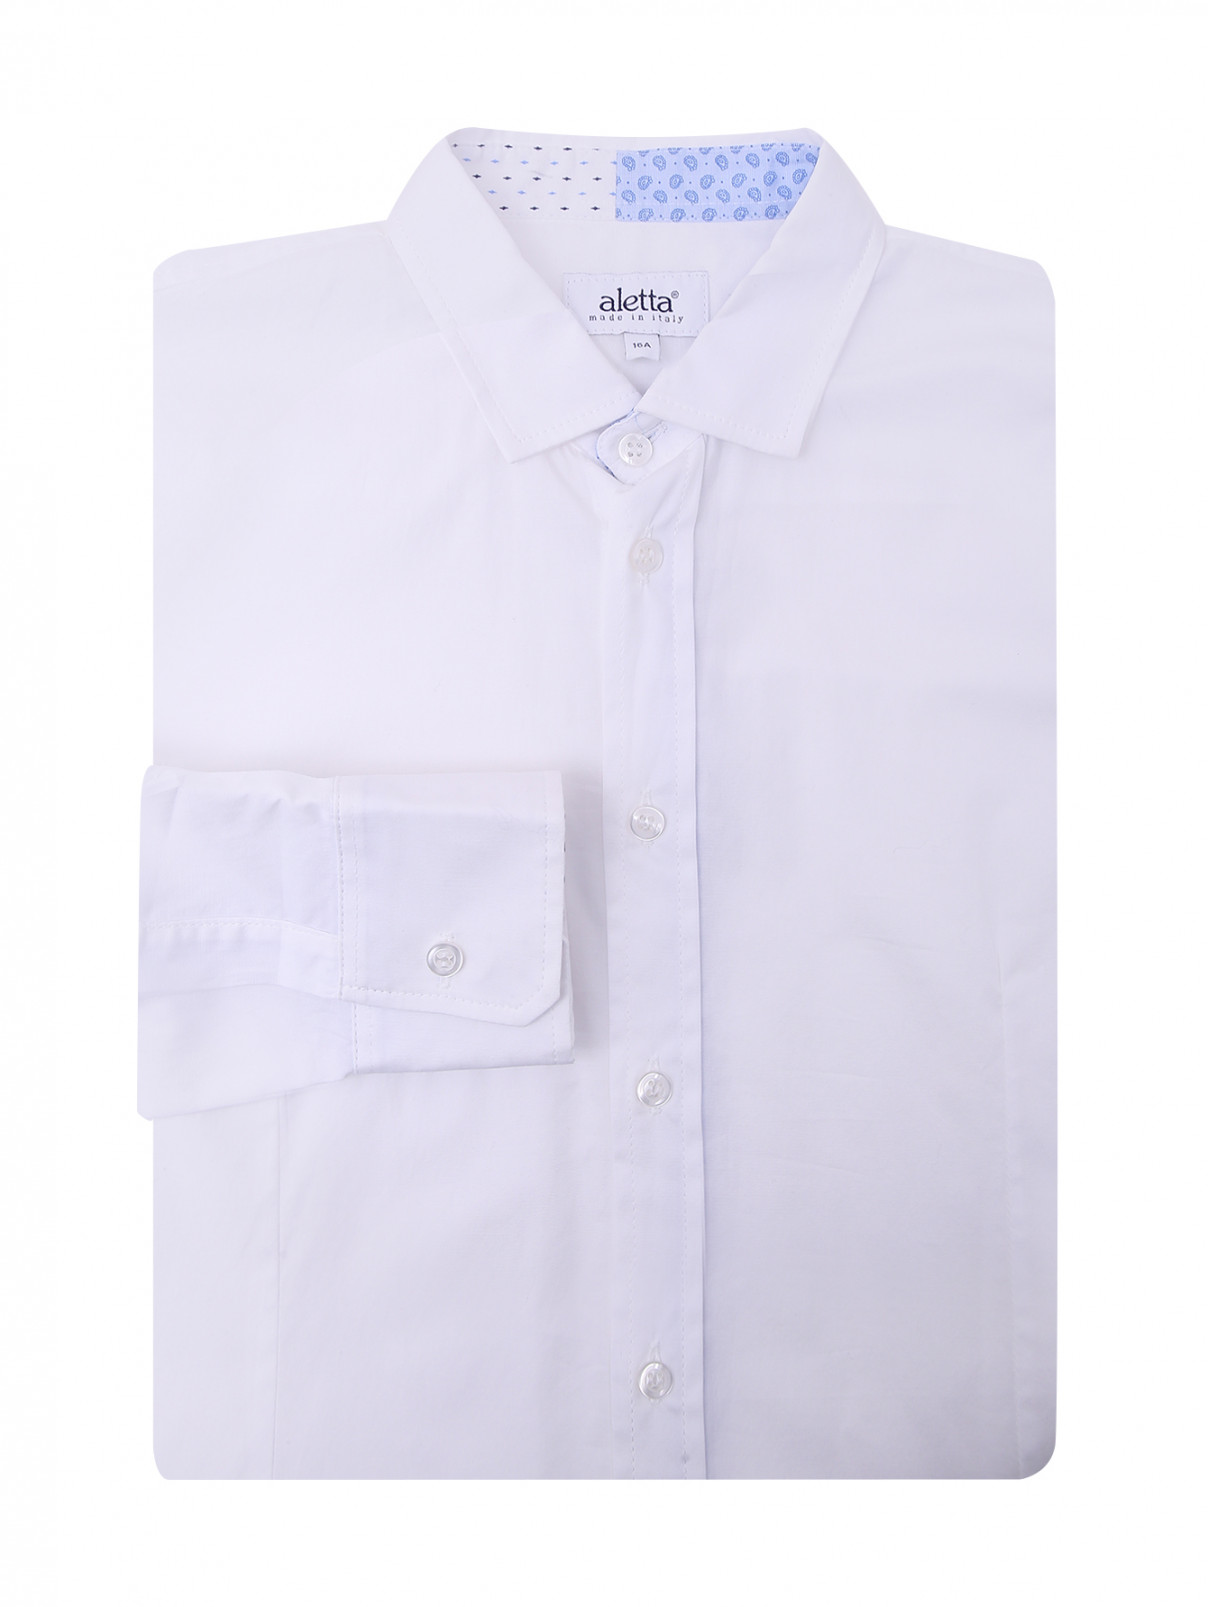 Однотонная рубашка из хлопка Aletta Couture  –  Общий вид  – Цвет:  Белый